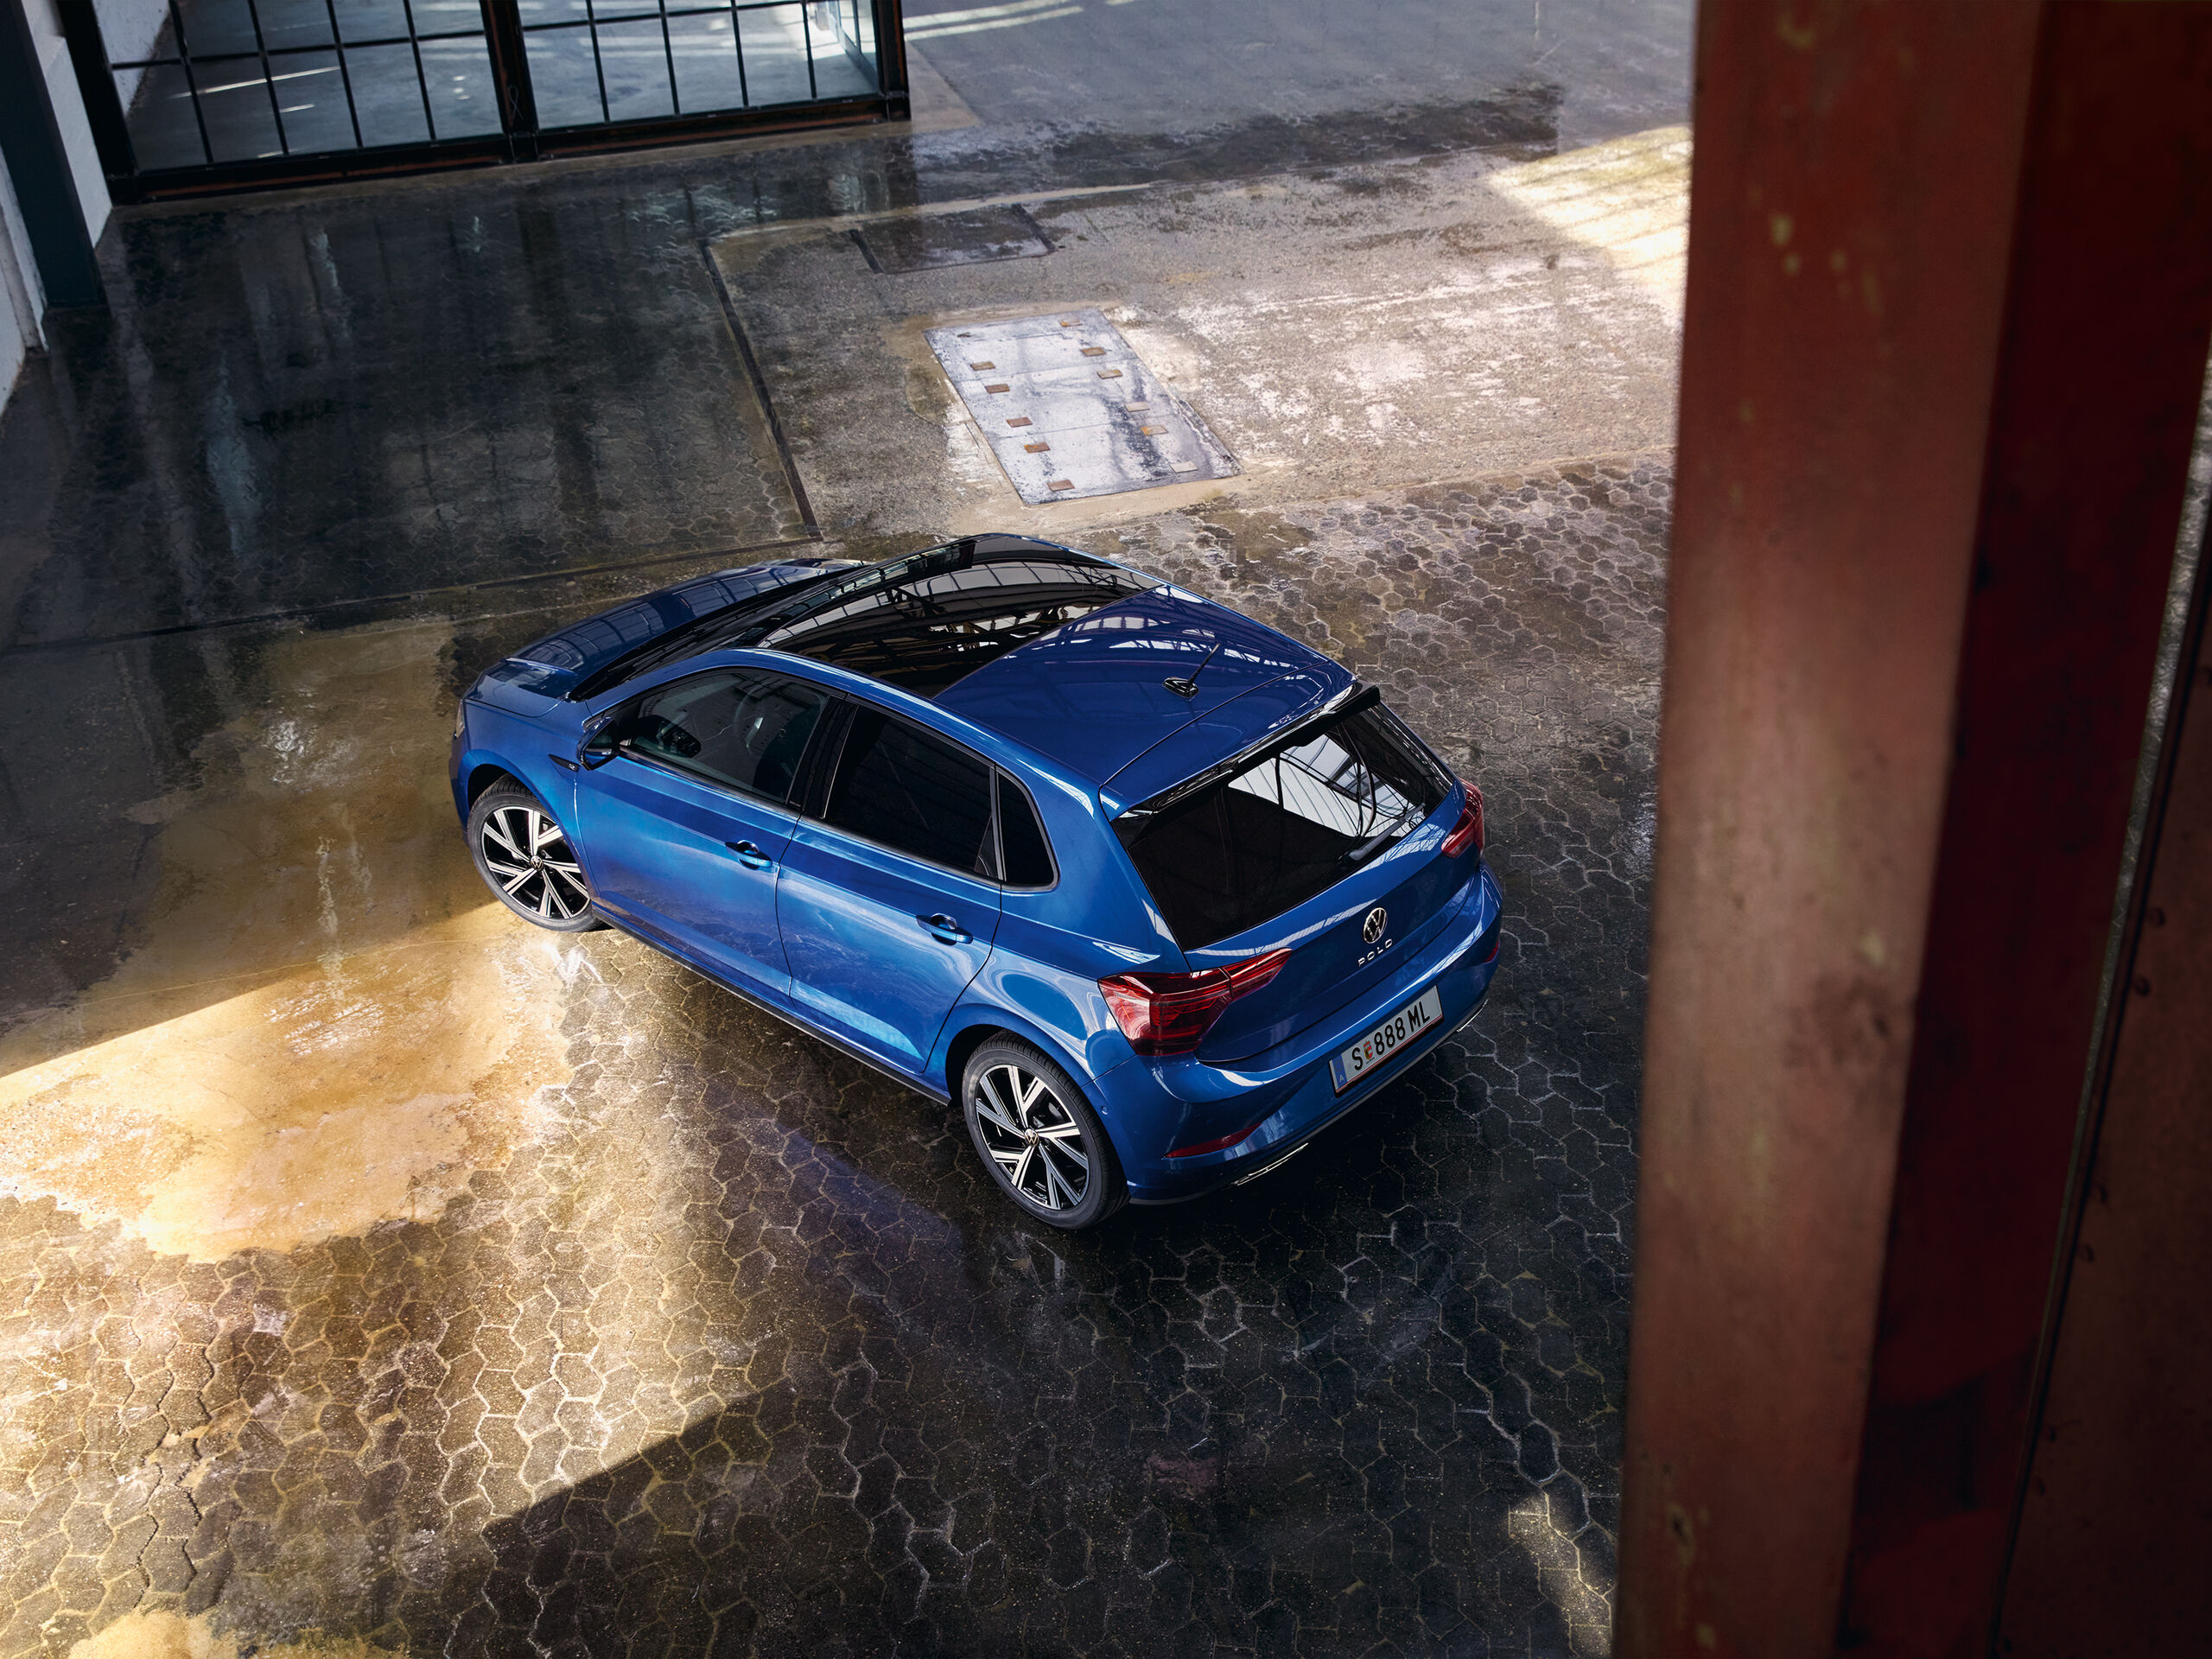 Vista de cima de um VW Polo azul com teto de abrir panorâmico opcional.